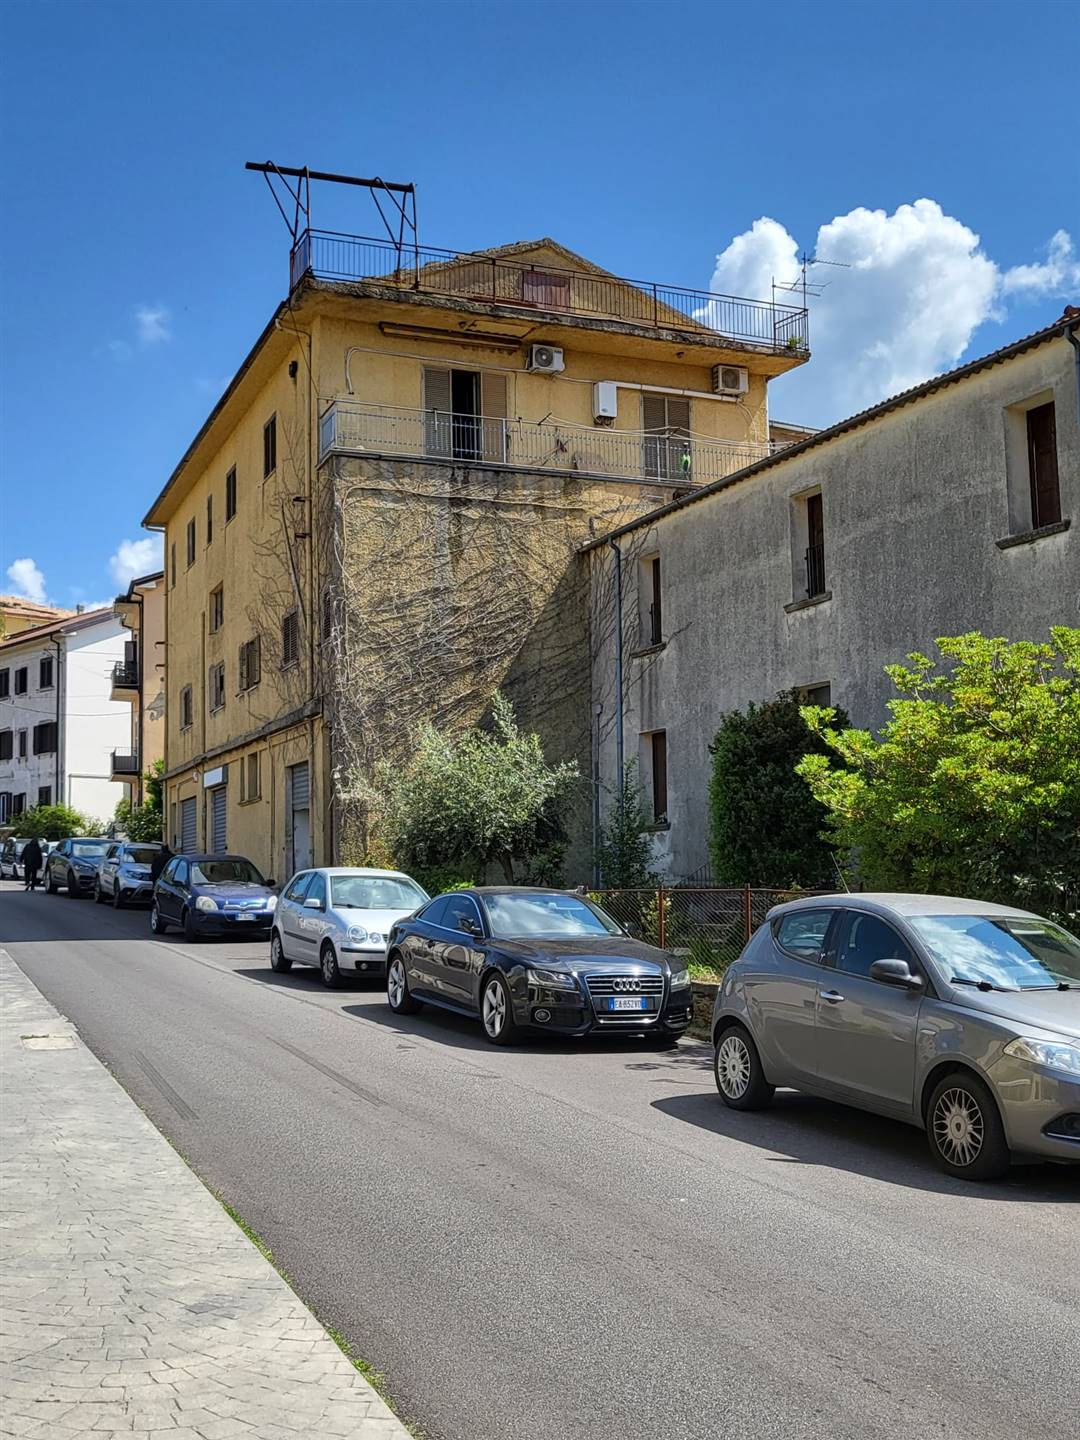 STAZIONE DI MONTALTO, MONTALTO UFFUGO, Wohnung zu verkaufen von 170 Qm, Renovierungsbeduerftig, Energie-klasse: G, am boden Land, zusammengestellt 